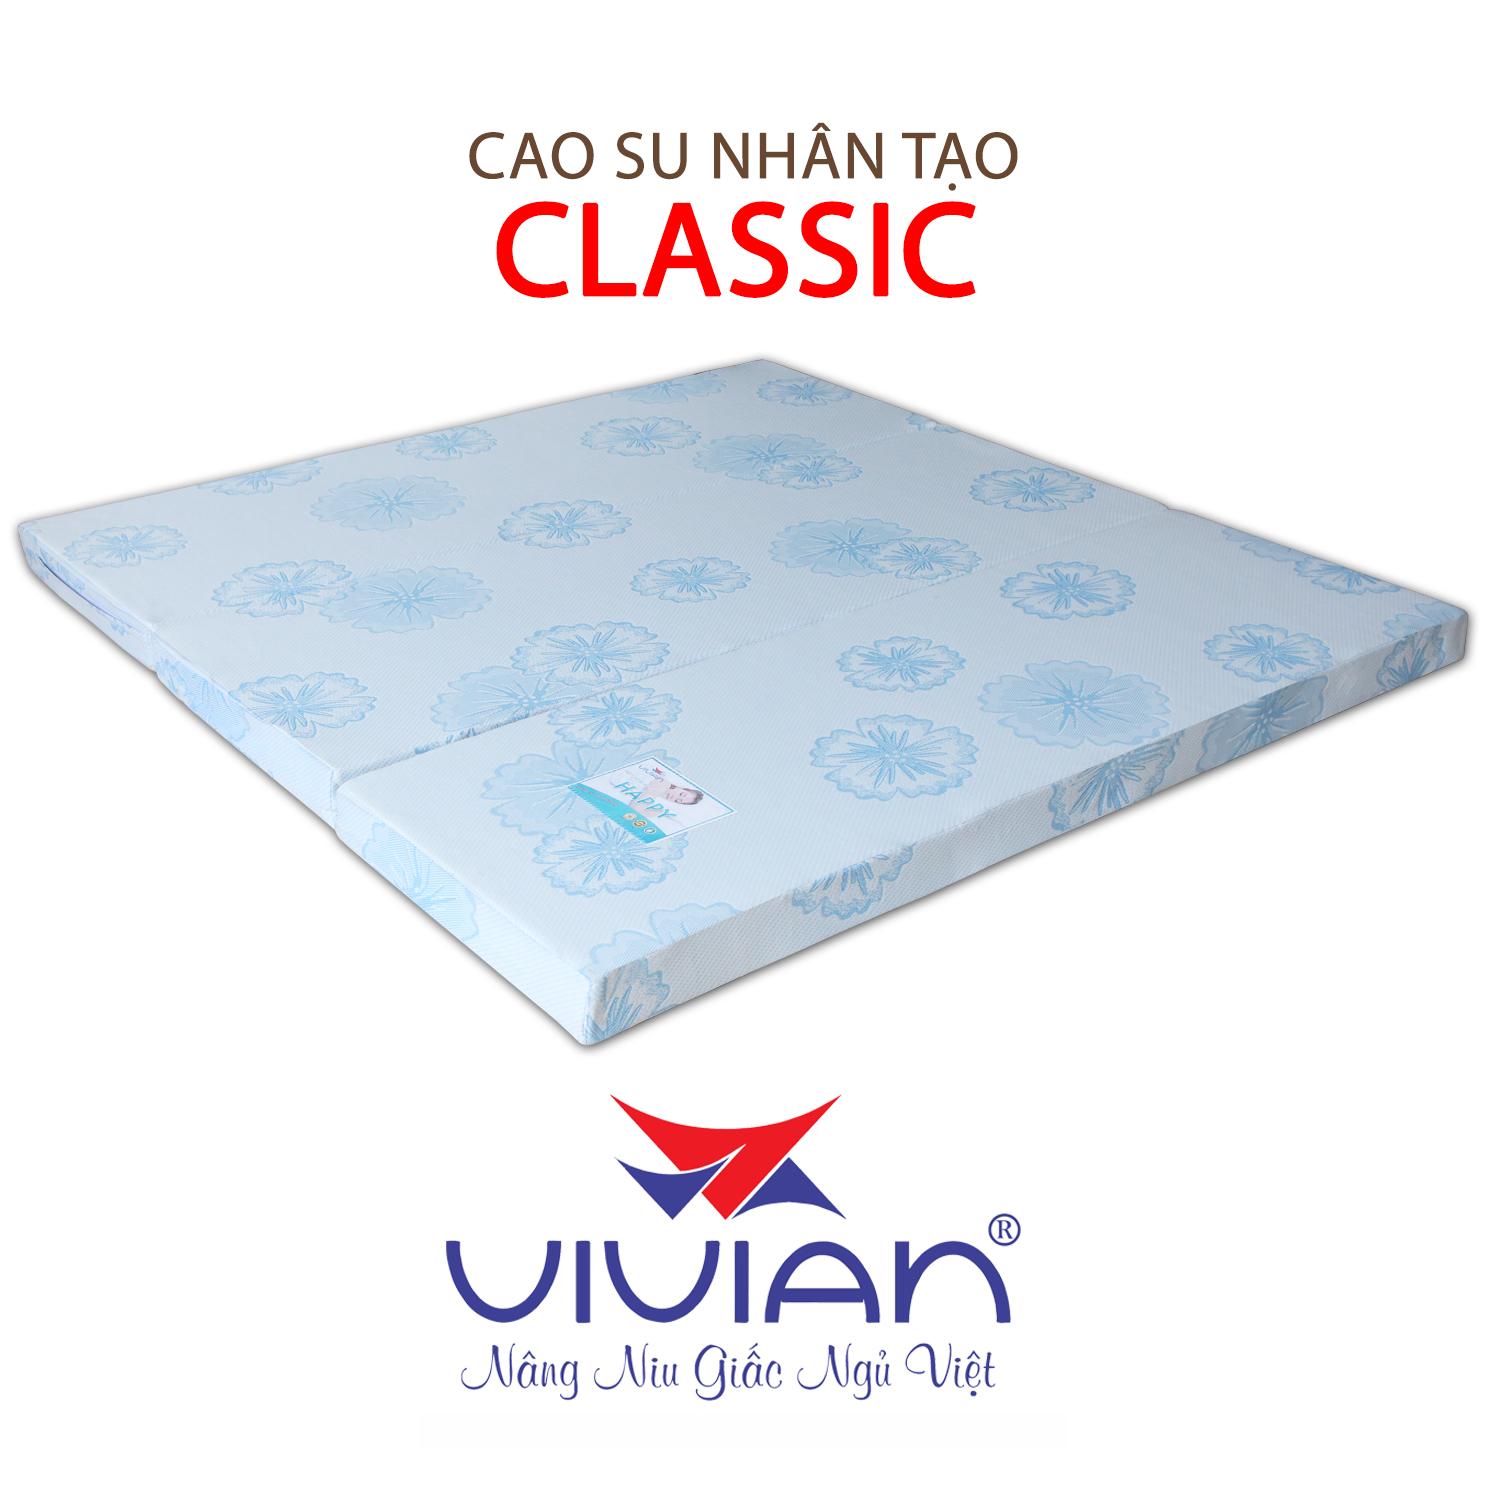 NỆM CAO SU NHÂN TẠO CLASSIC GẤP 3 VIVIAN 120X200X10